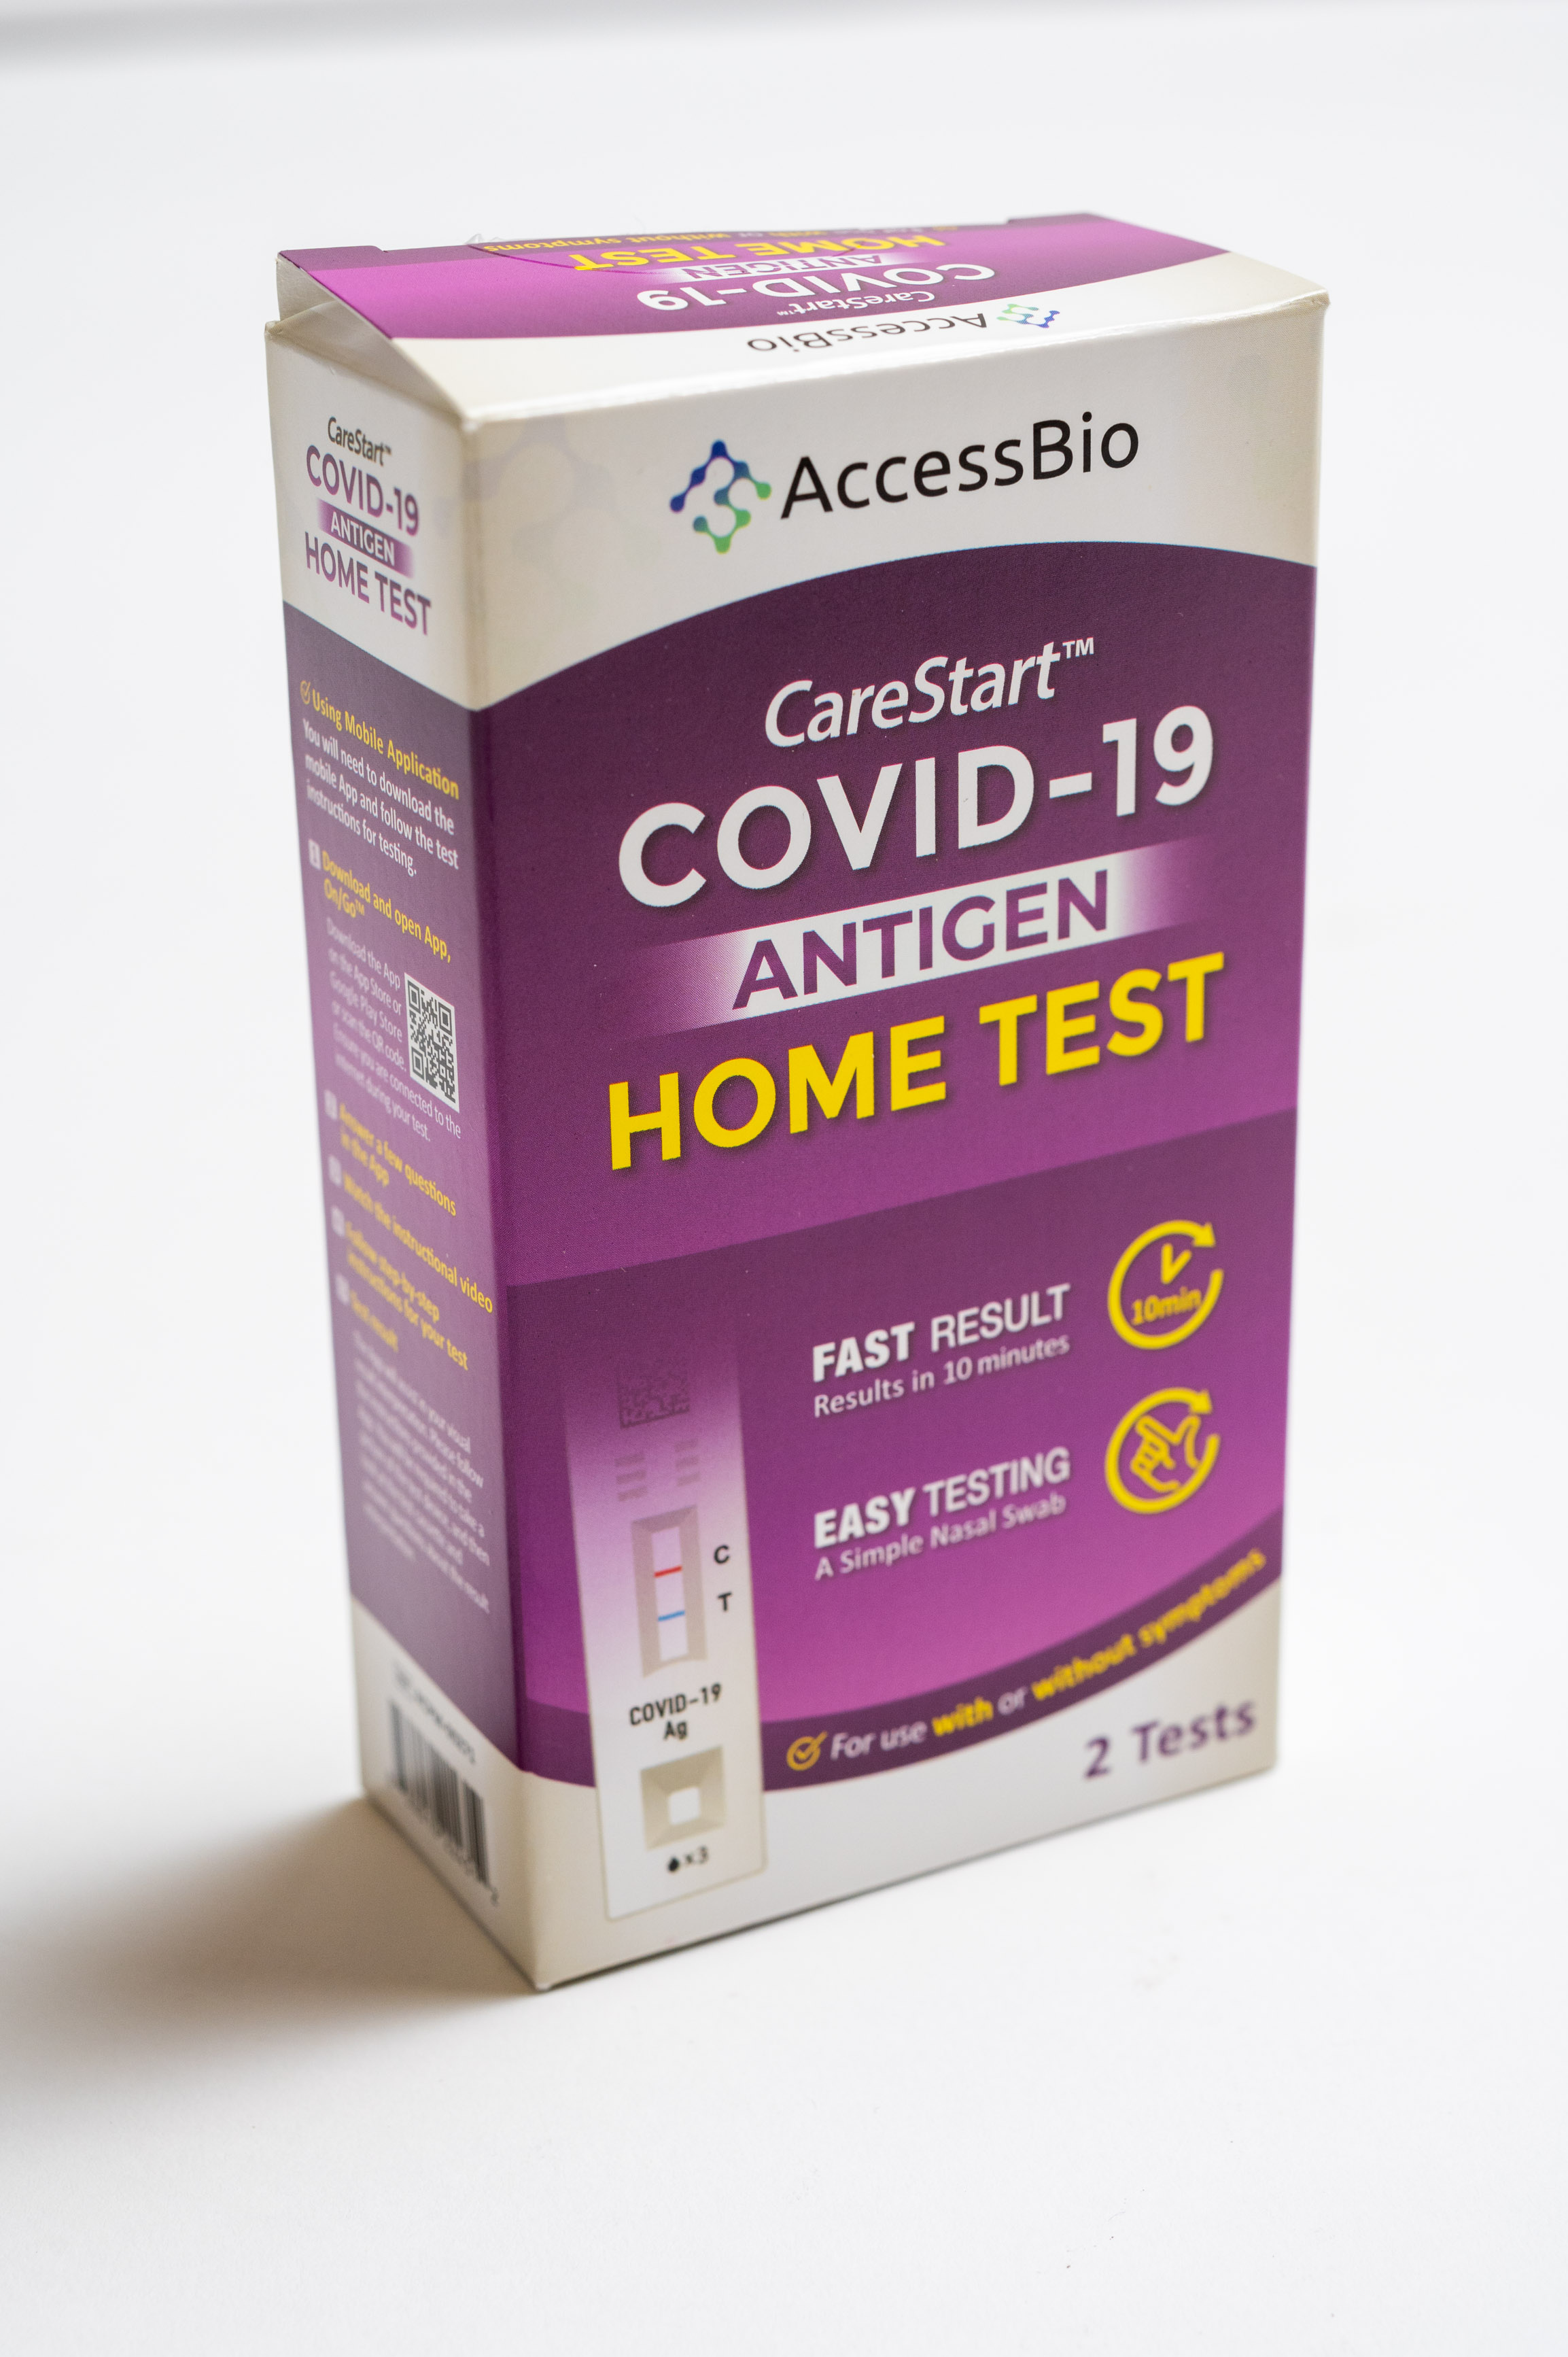 CareStart COVID-19 Antigen Home Test Kit box